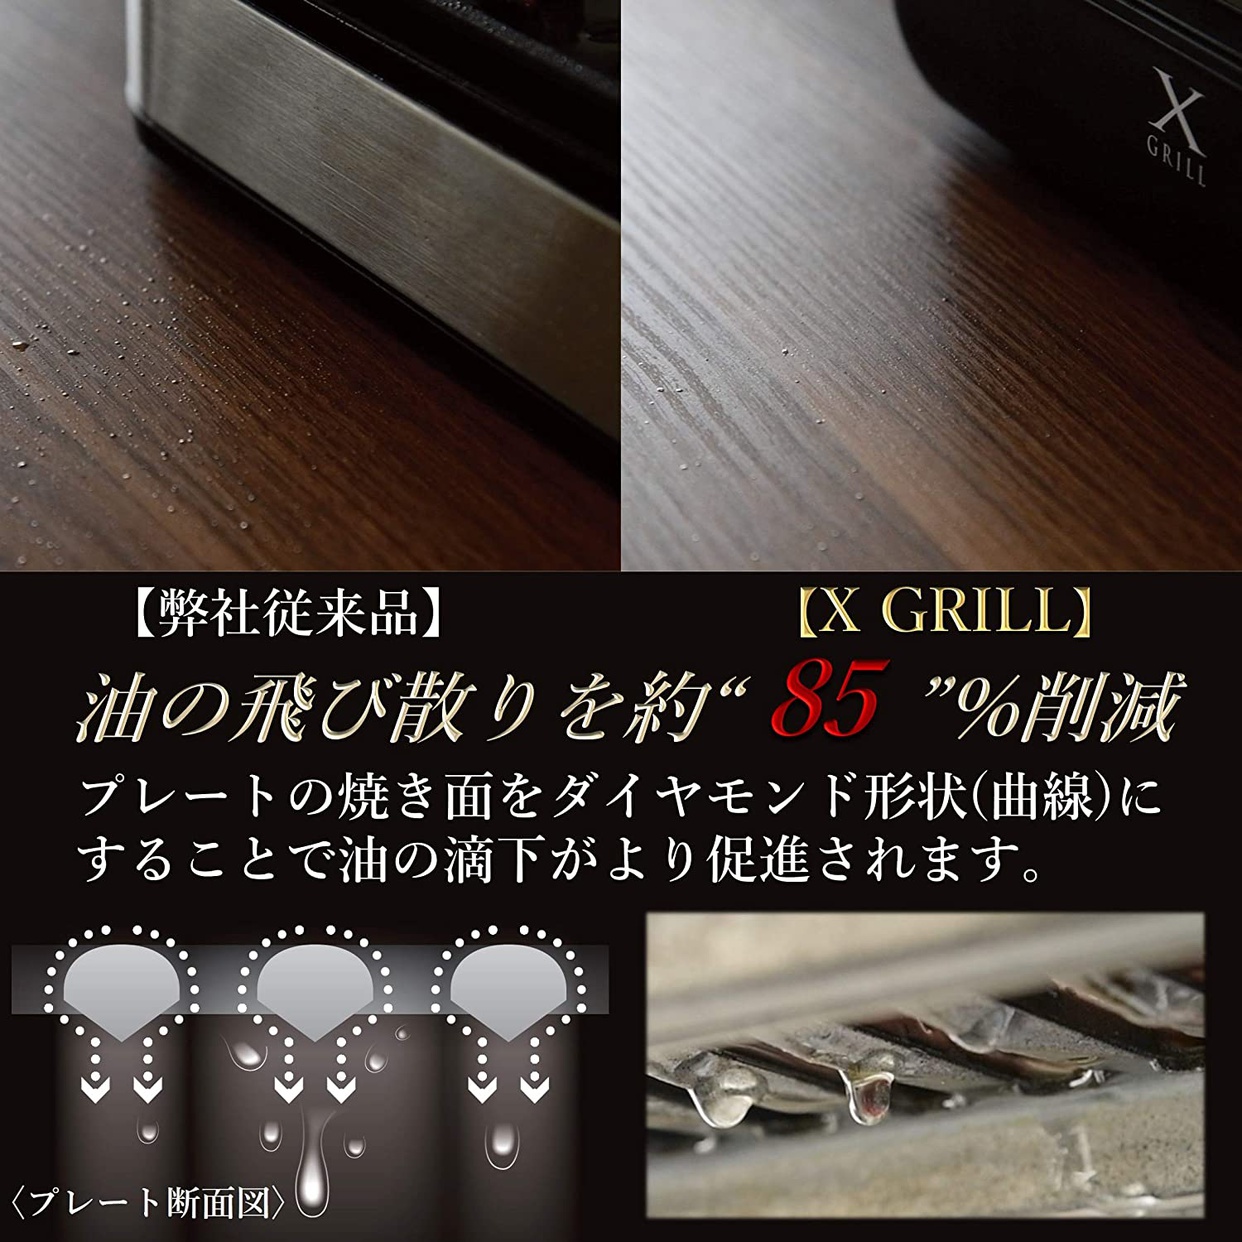 山善(YAMAZEN) 焼き肉グリル YGMA-X100の商品画像4 